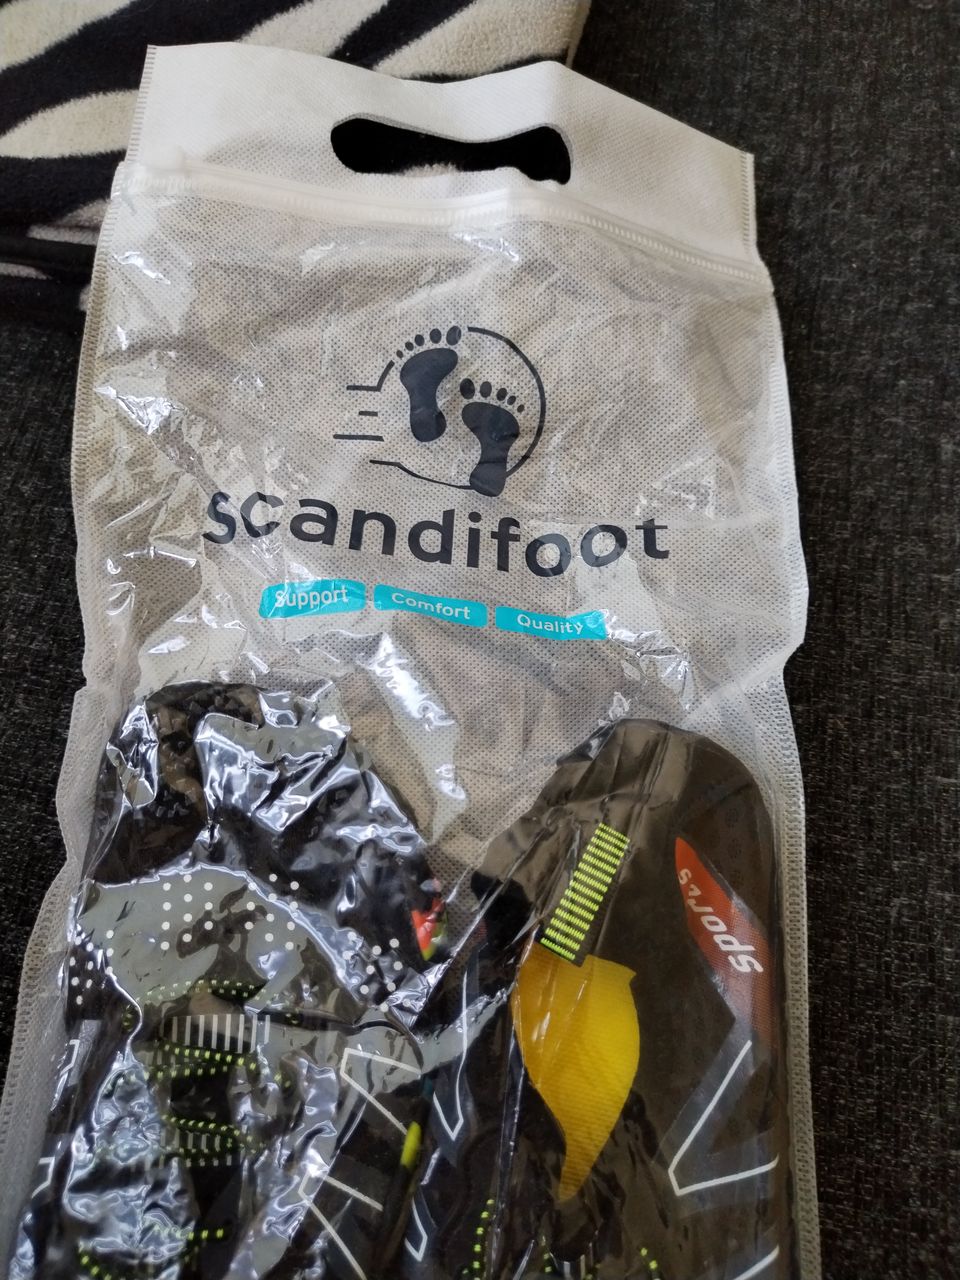 Scandifoot